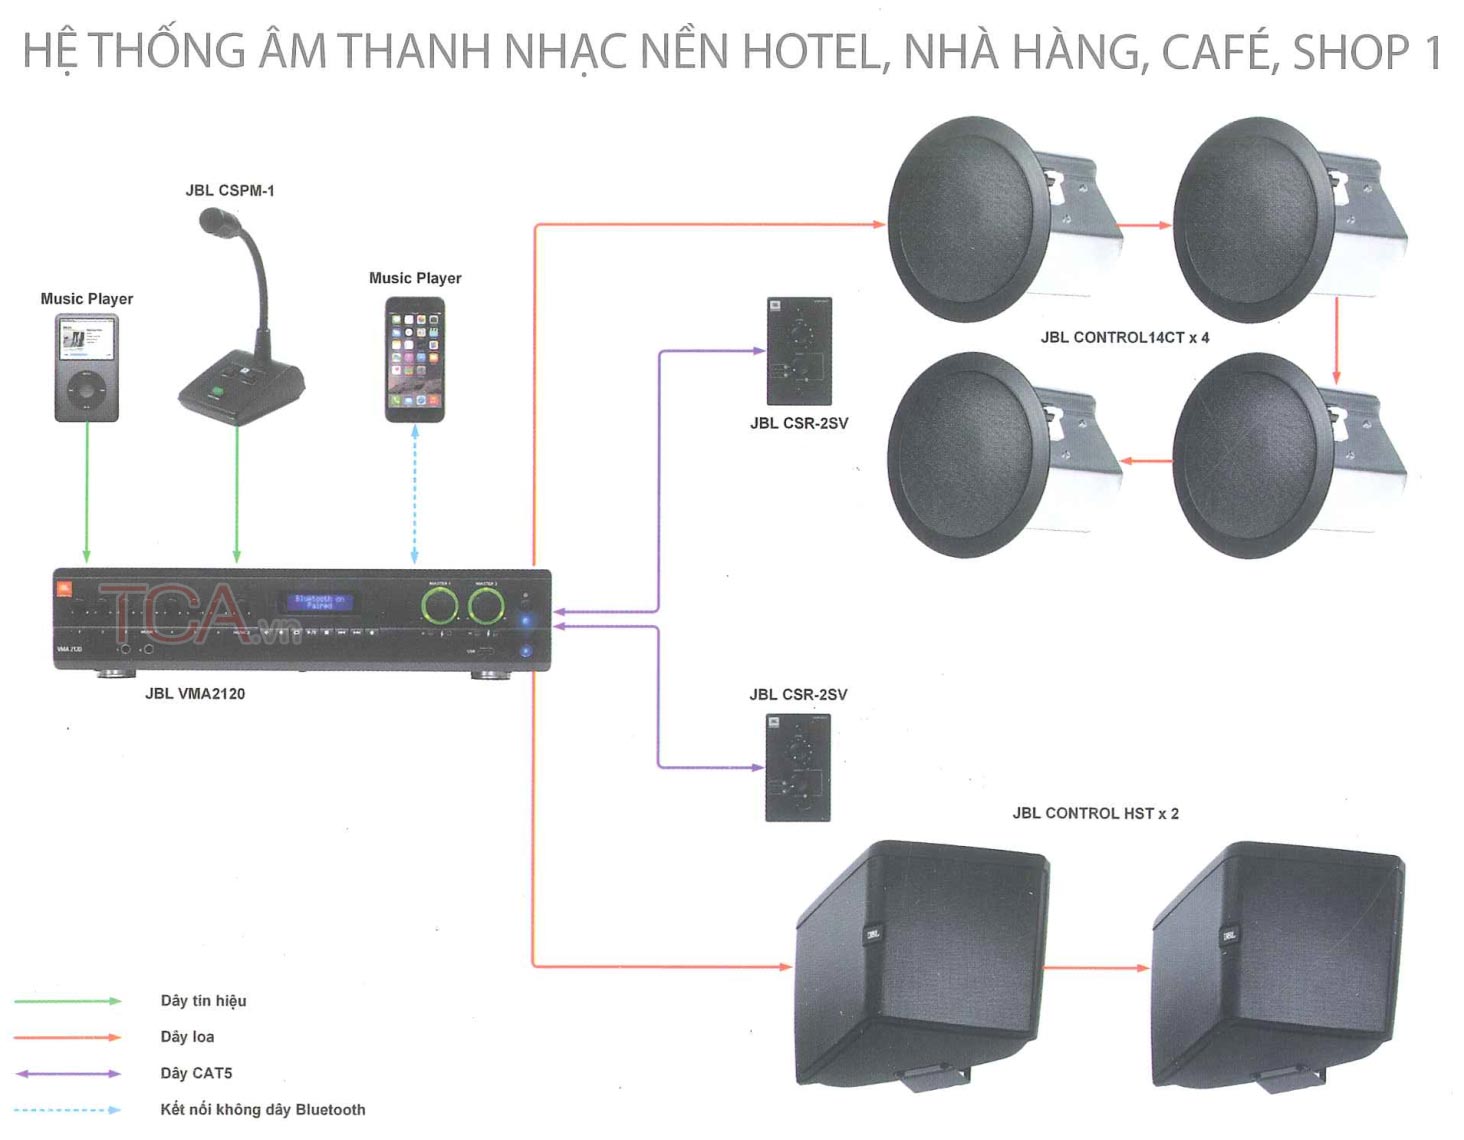 Hệ thống âm thanh nhạc nền hotel, nhà hàng, cafe, shop 1